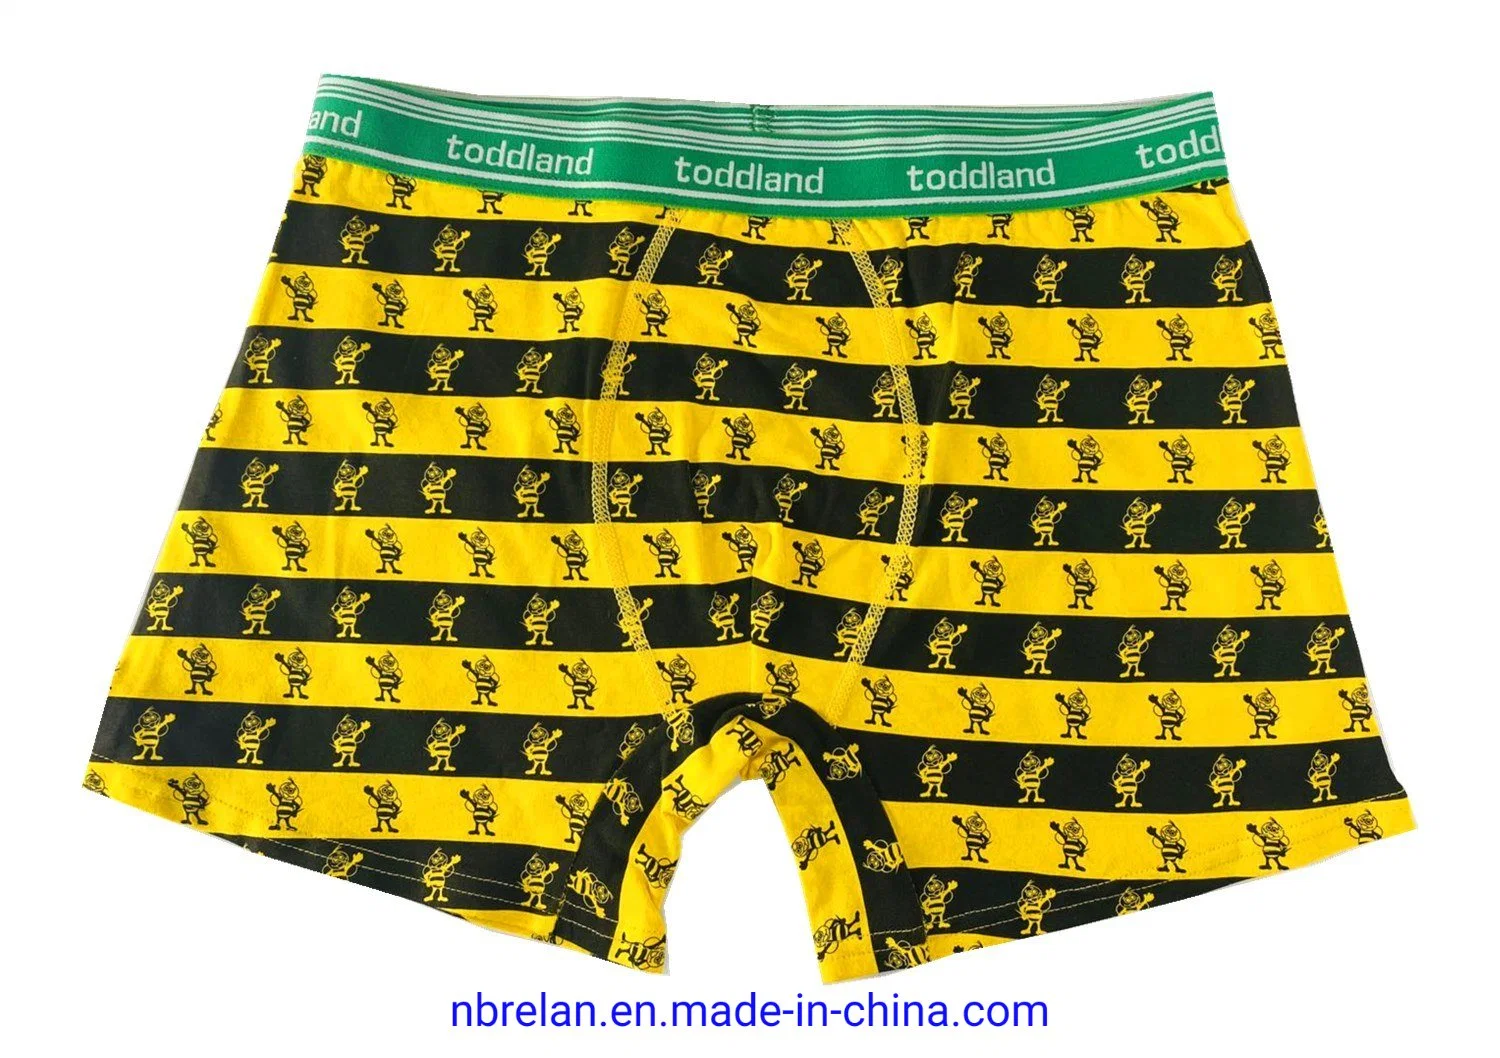 Tail Print Cotton/Spandex Men&prime; S Print Underpants, Underwear, Boxer Briefs, Undershorts